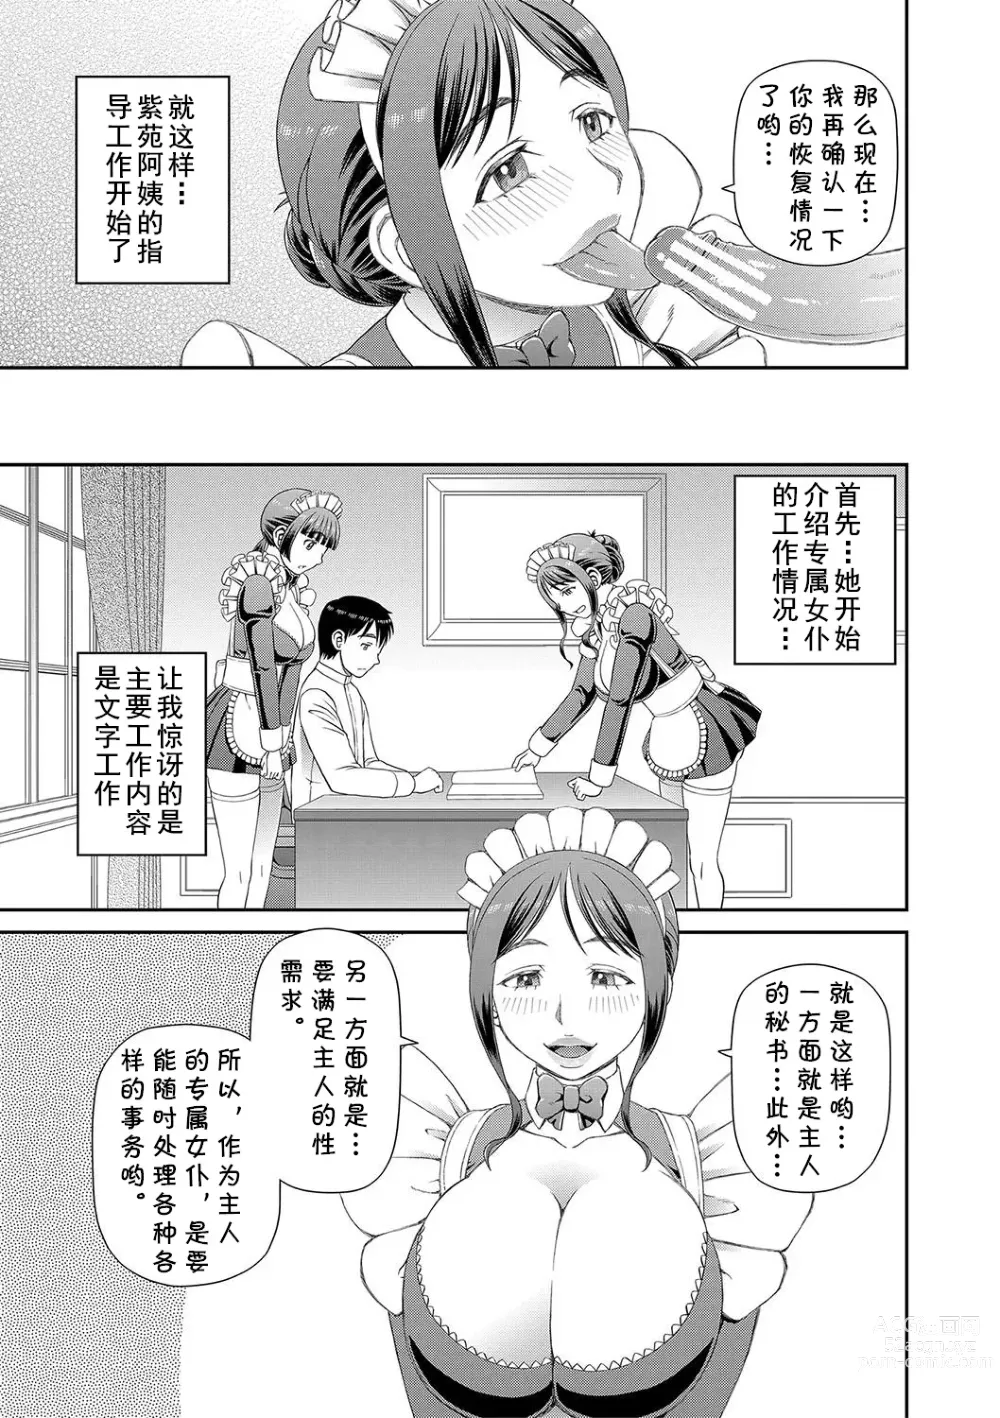 Page 11 of manga Ano Hito ni...